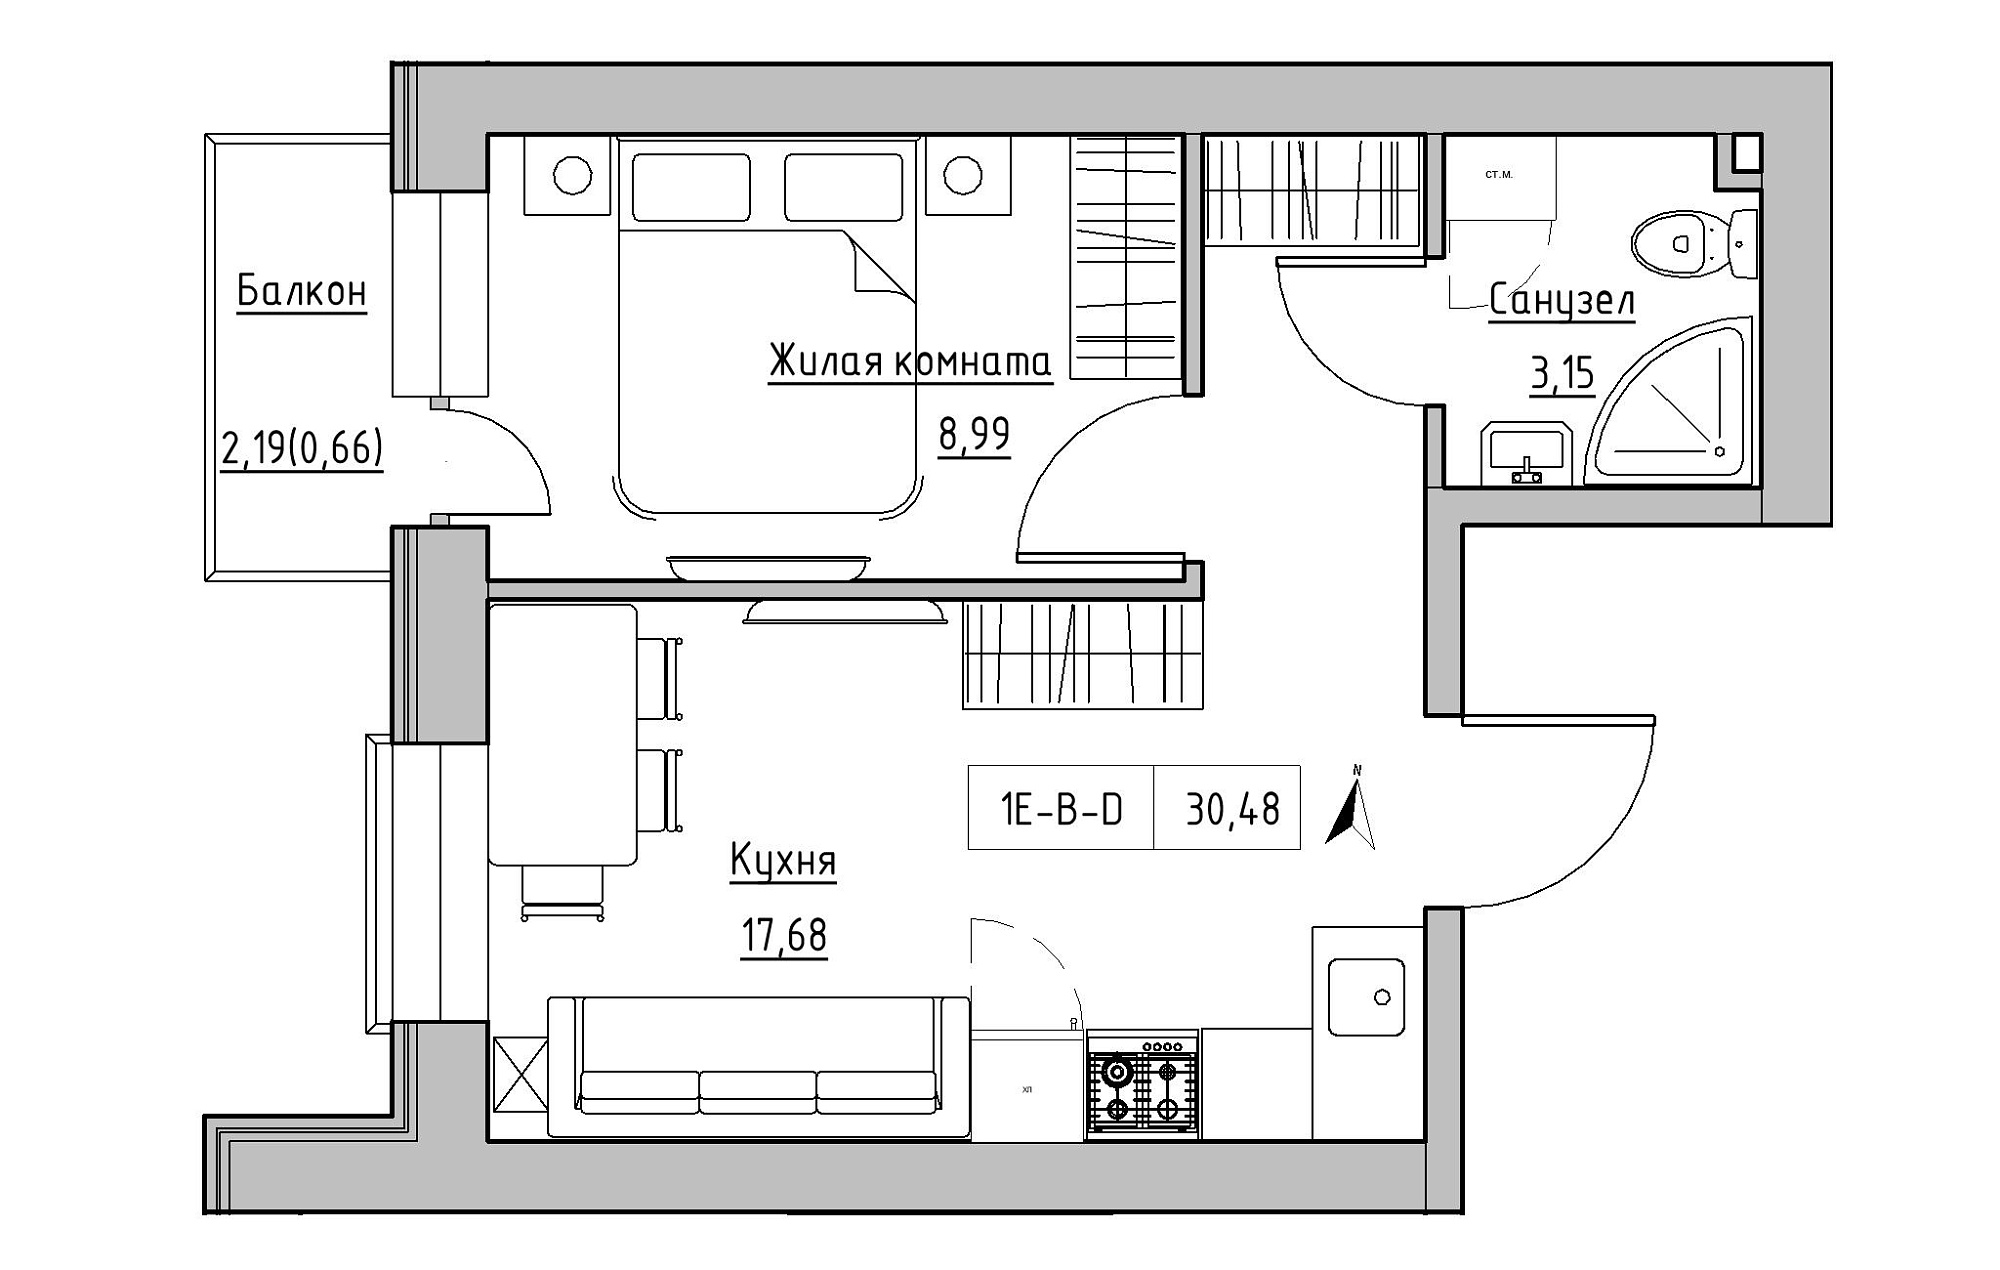 Планировка 1-к квартира площей 30.48м2, KS-019-02/0003.